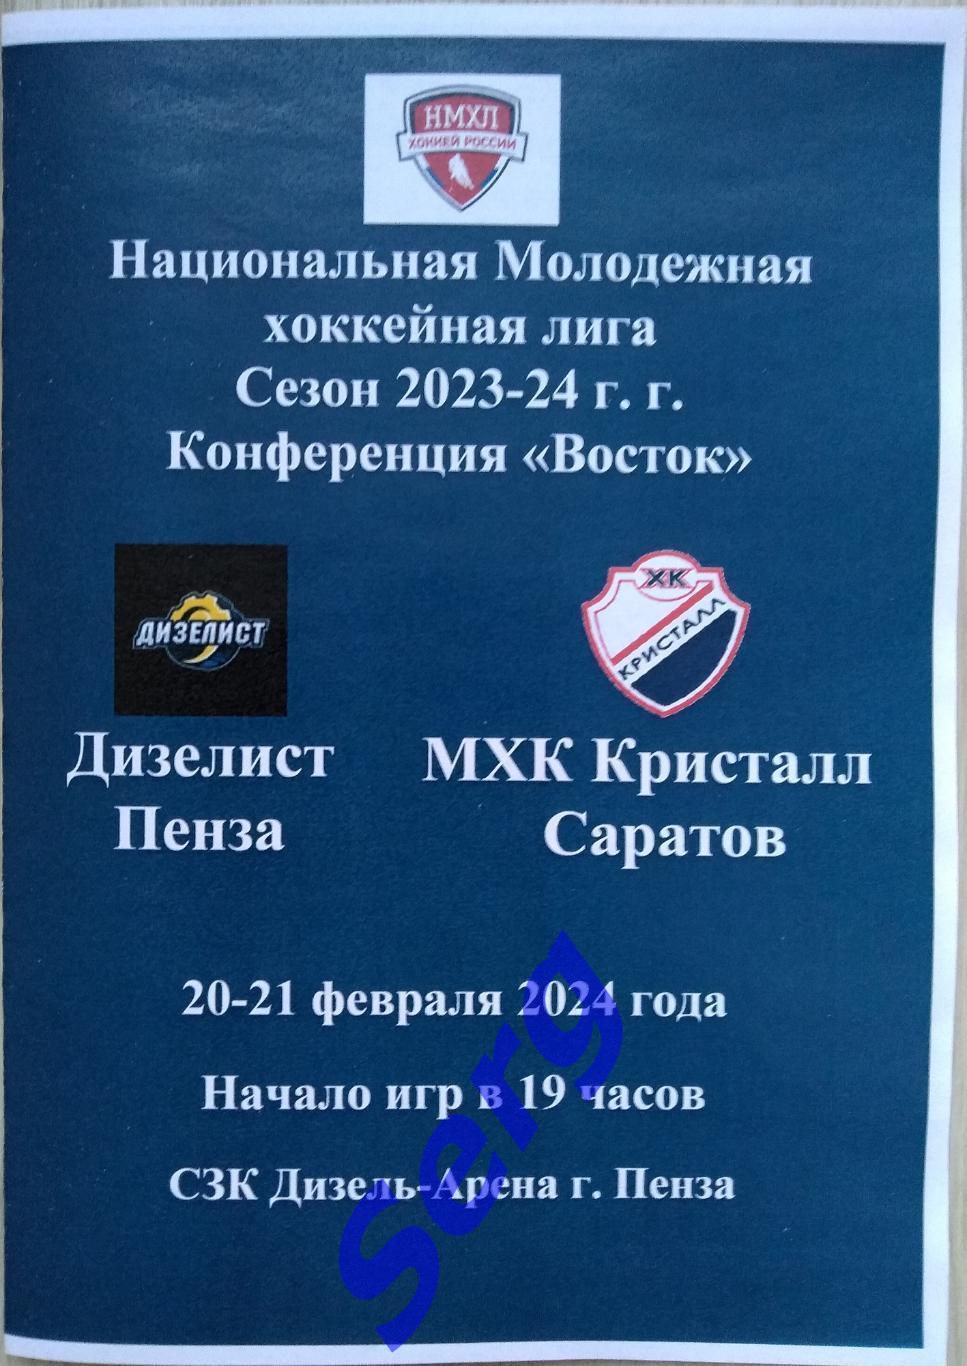 МХК Дизелист Пенза - МХК Кристалл Саратов - 20-21 февраля 2024 год. НМХЛ